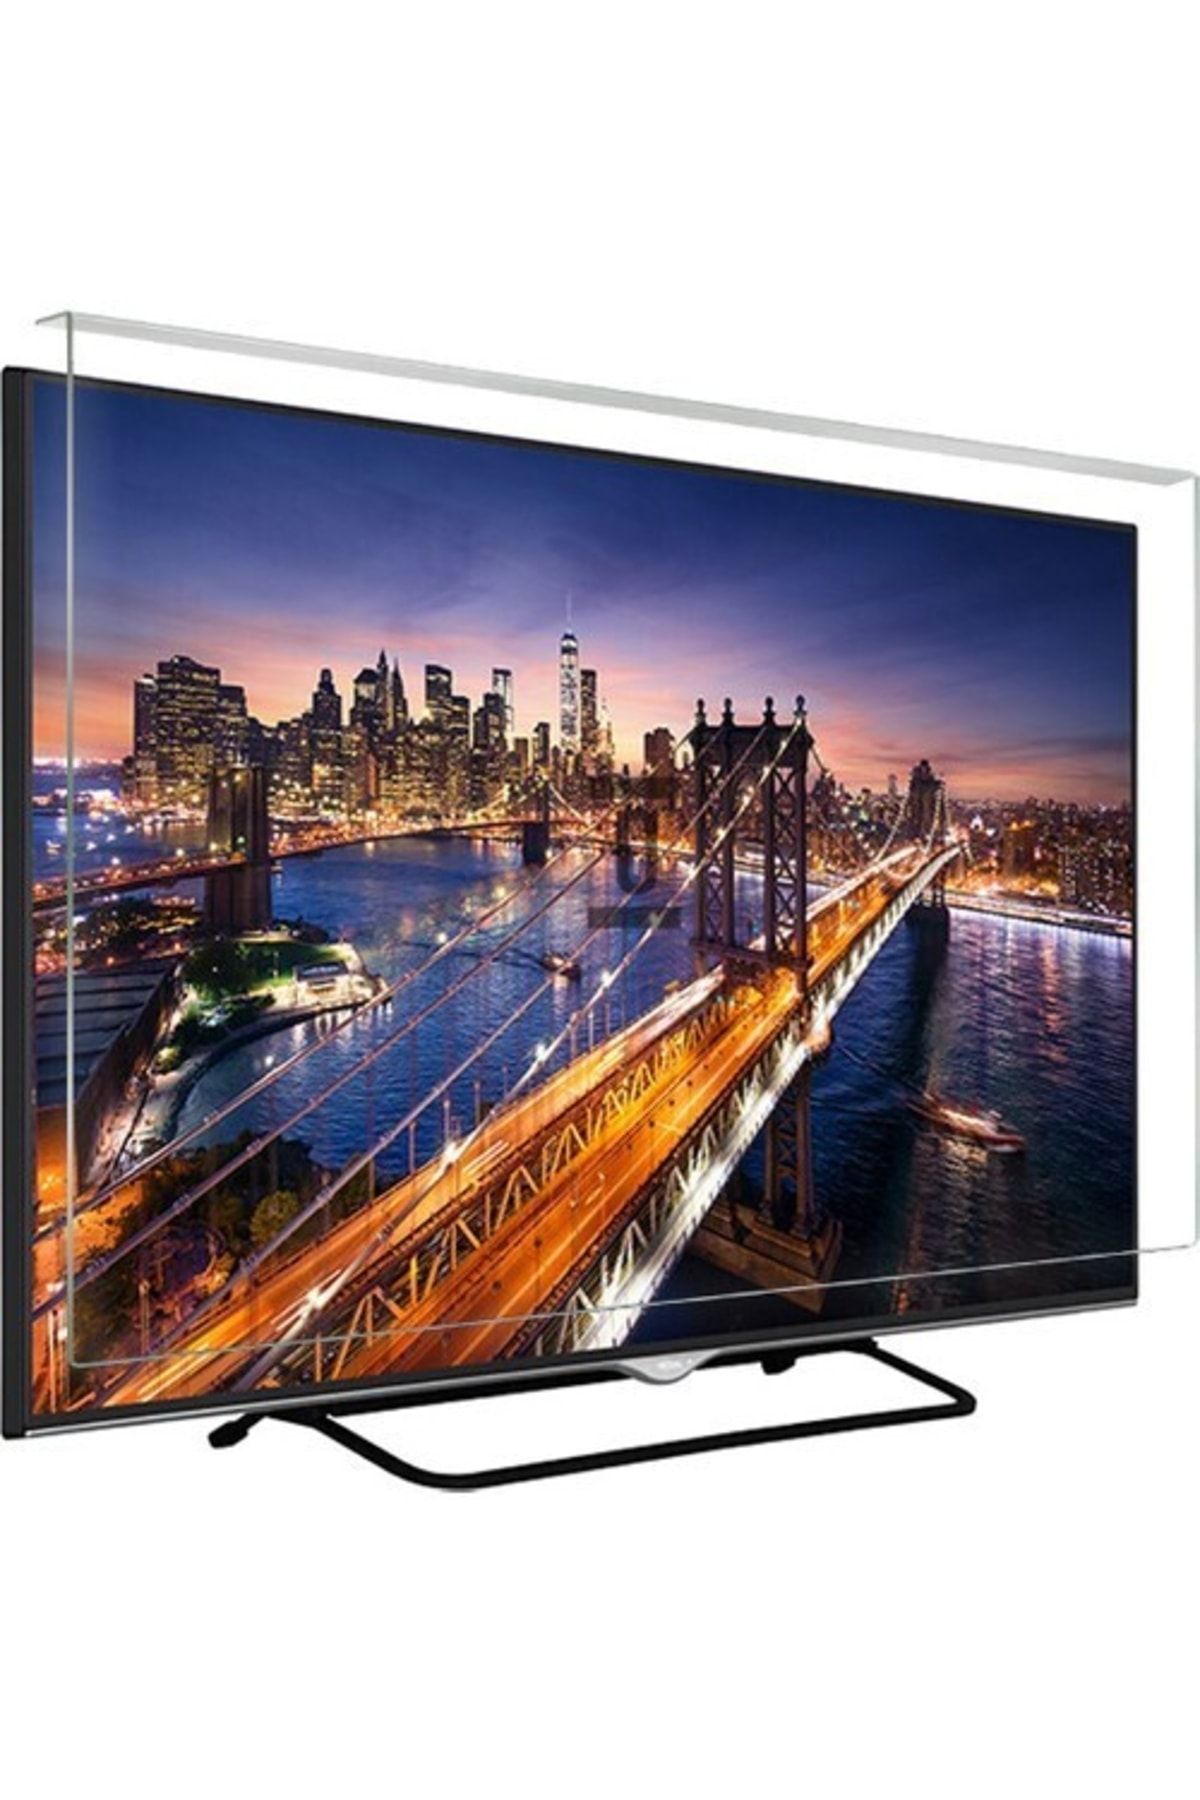 Telenova Asaf Online-evçelik 50u9001 Tv Ekran Koruyucu Düz (flat) Ekran